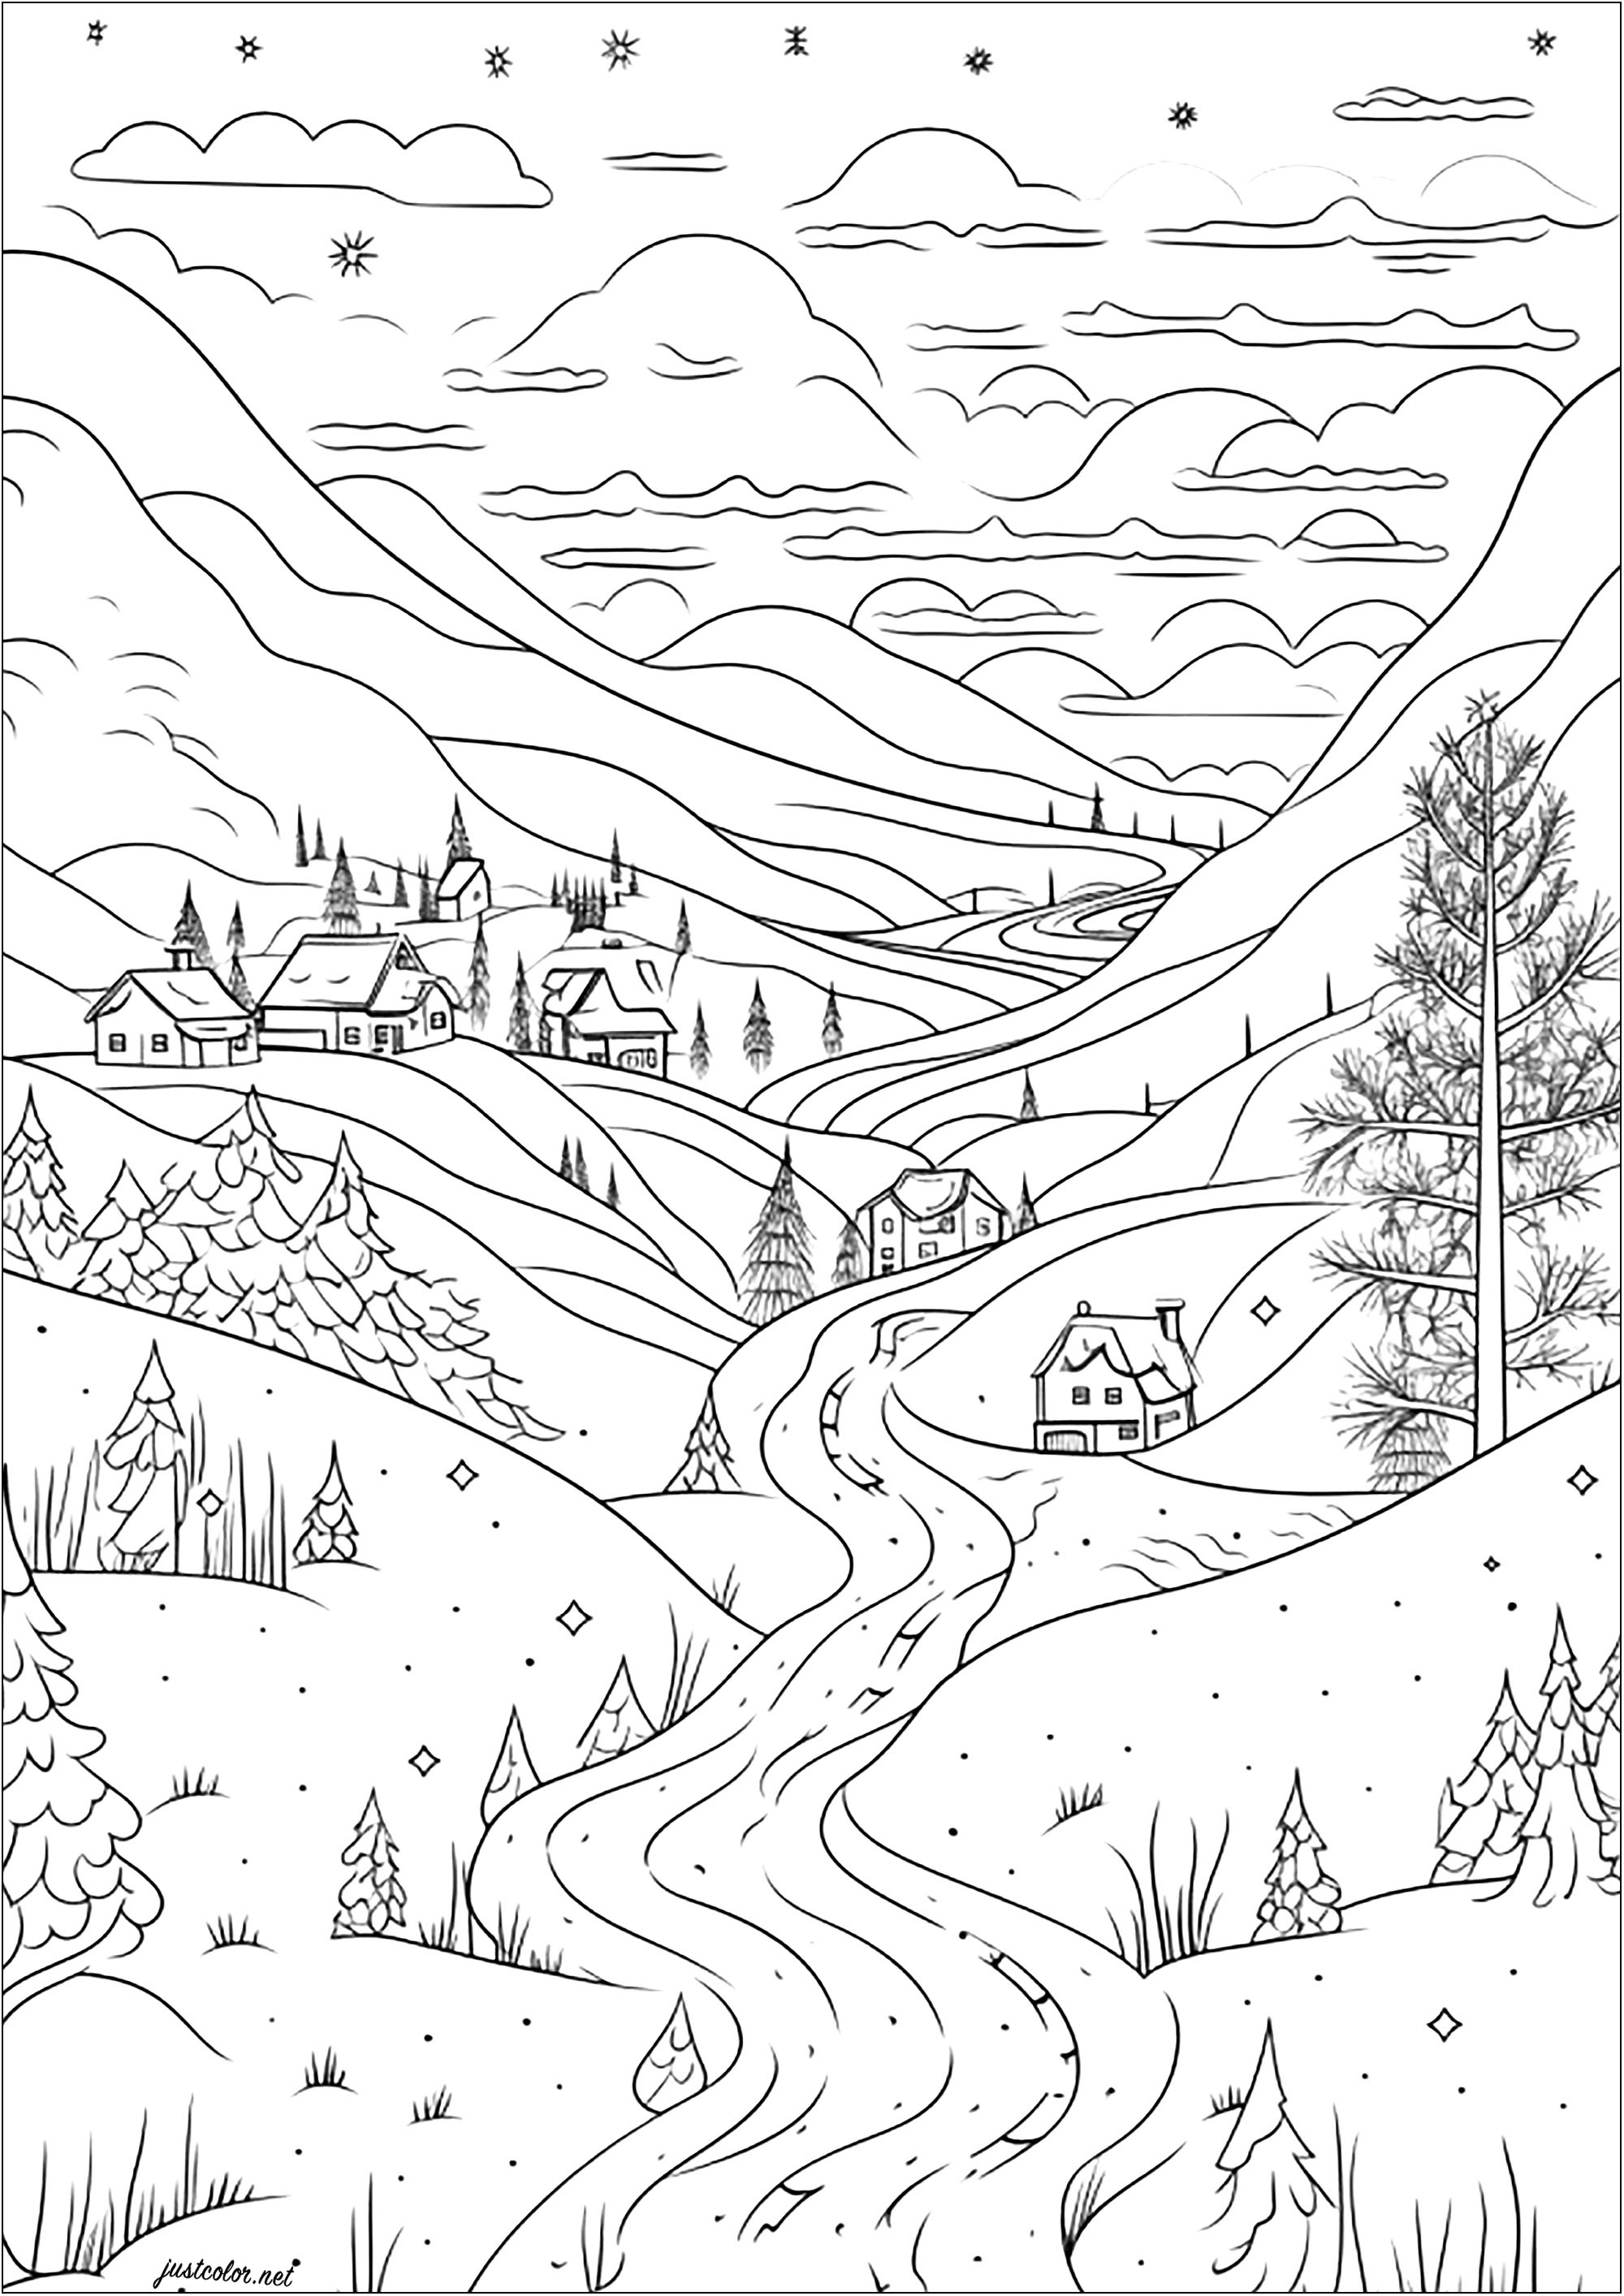 Un bonito pueblo nevado. Bonitas casas, abetos y montañas